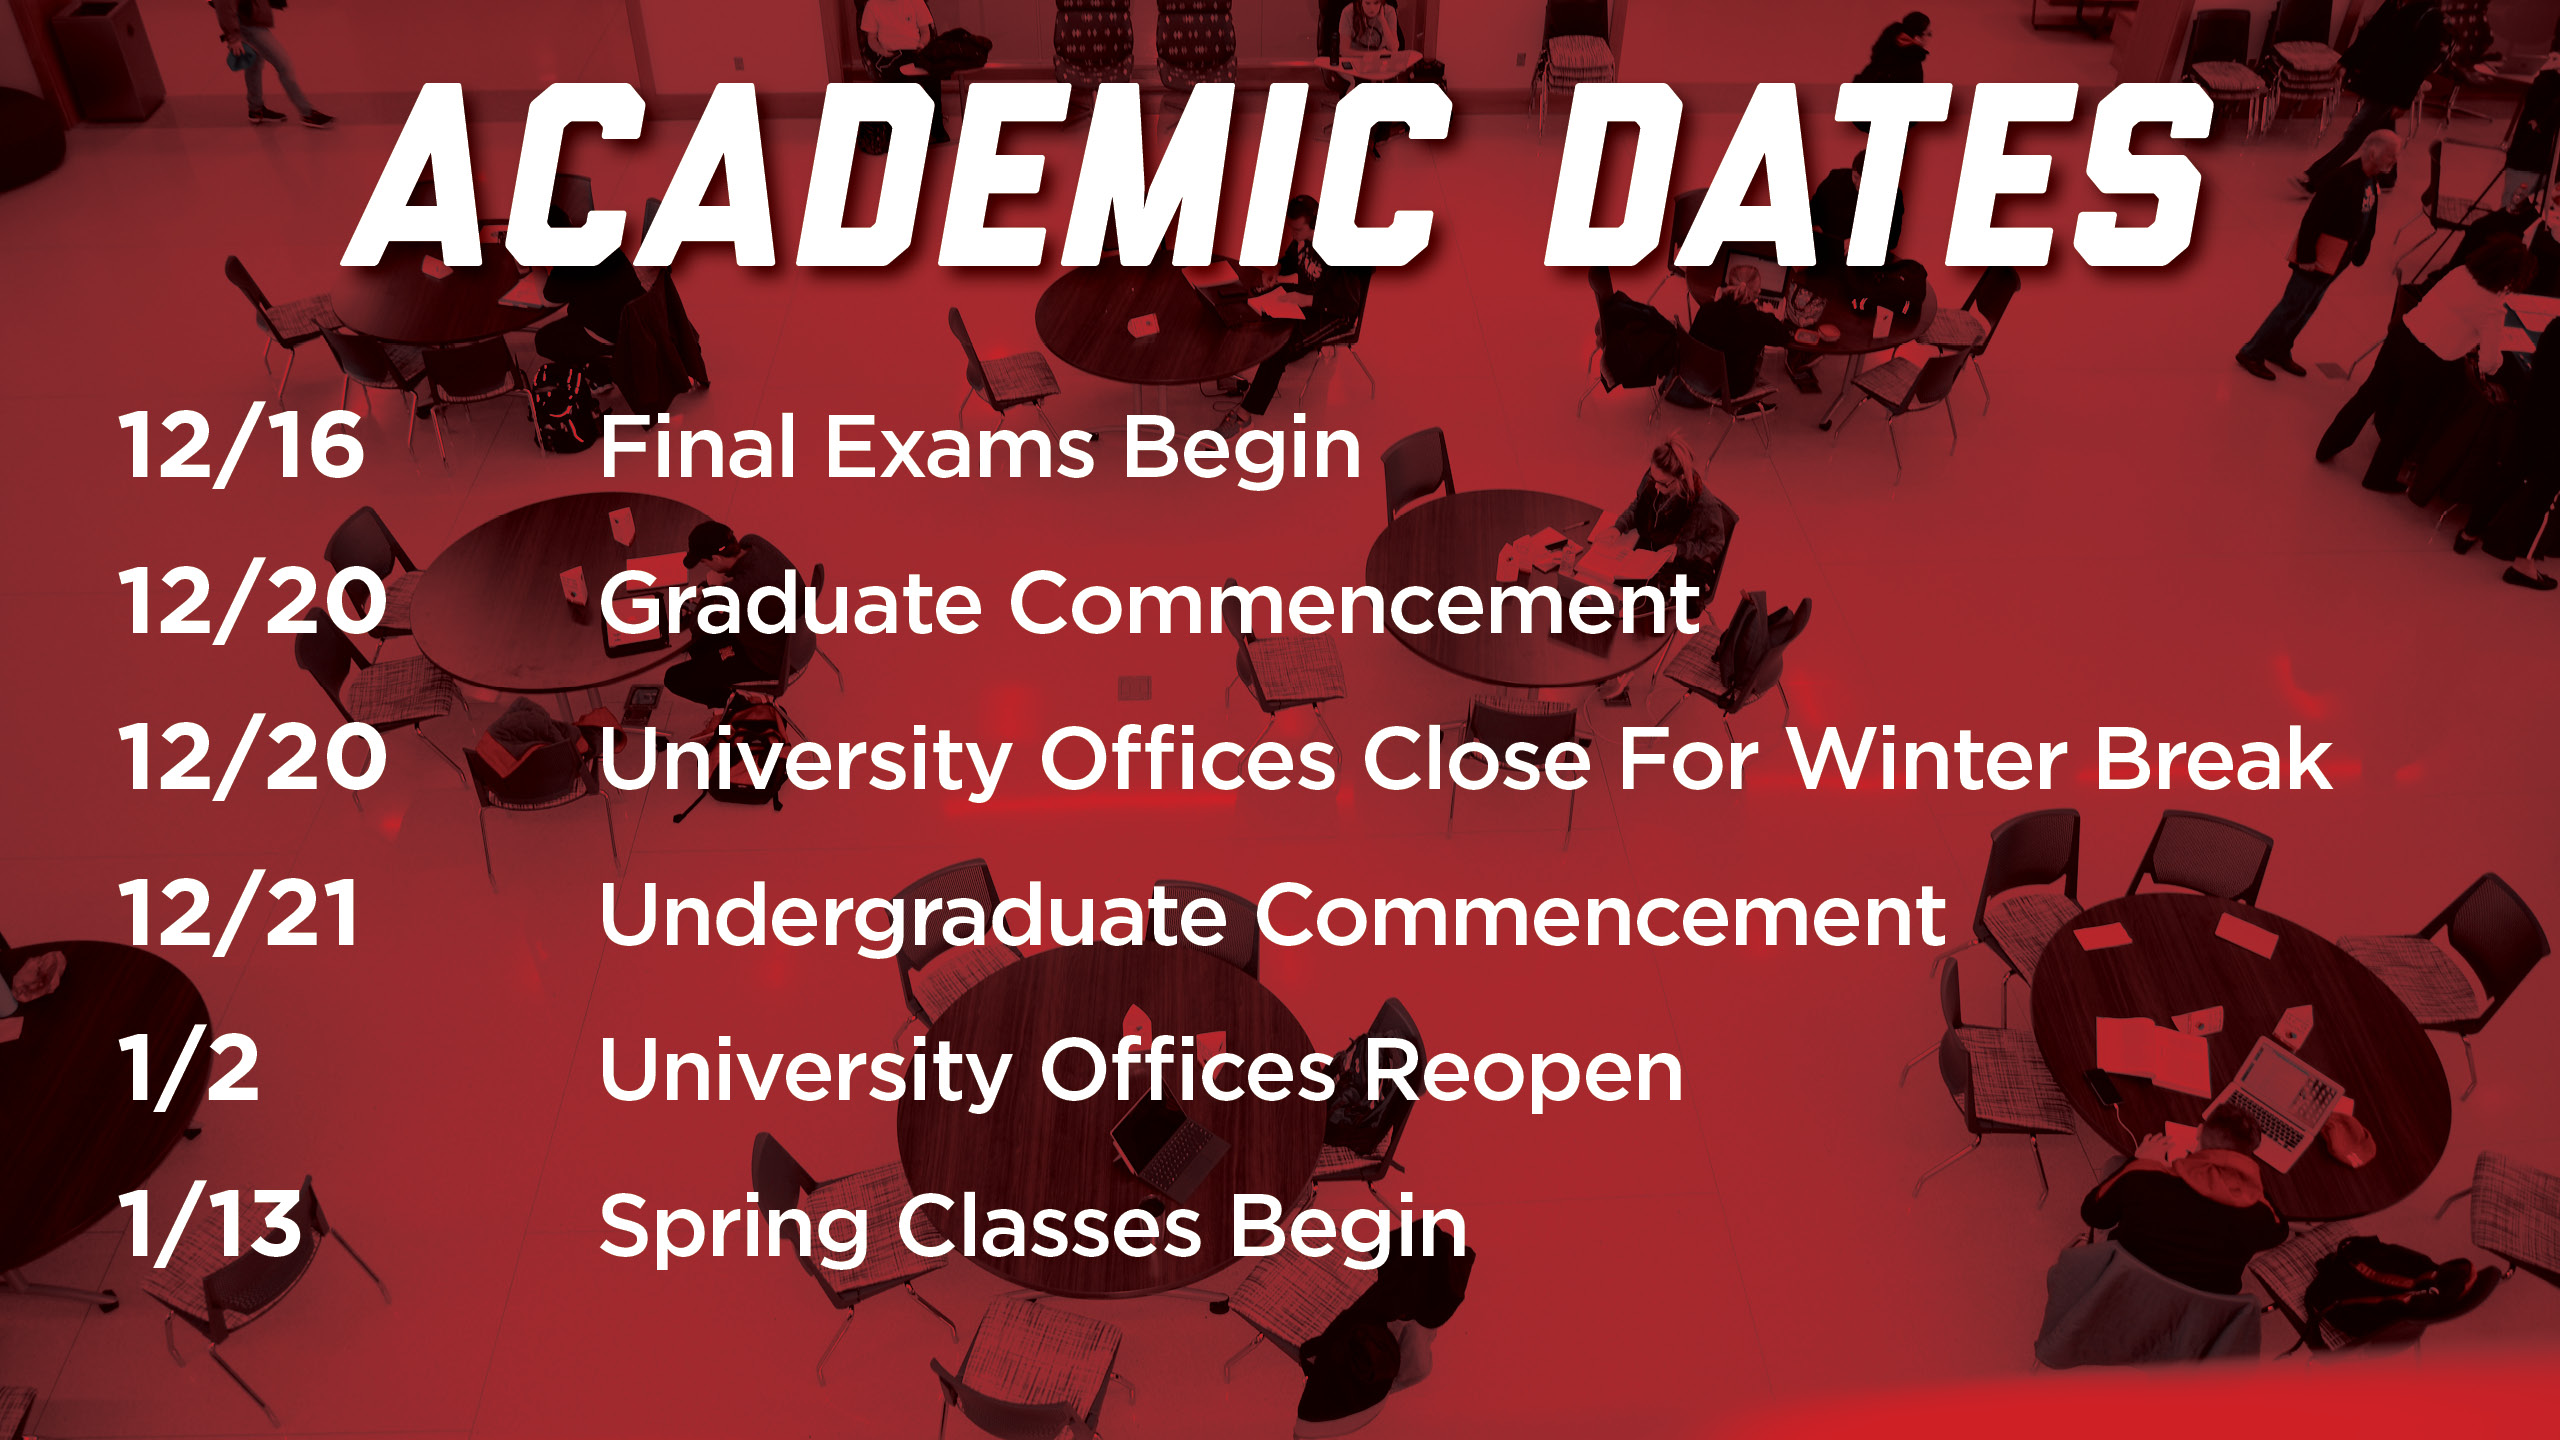 academic-dates-announce-university-of-nebraska-lincoln